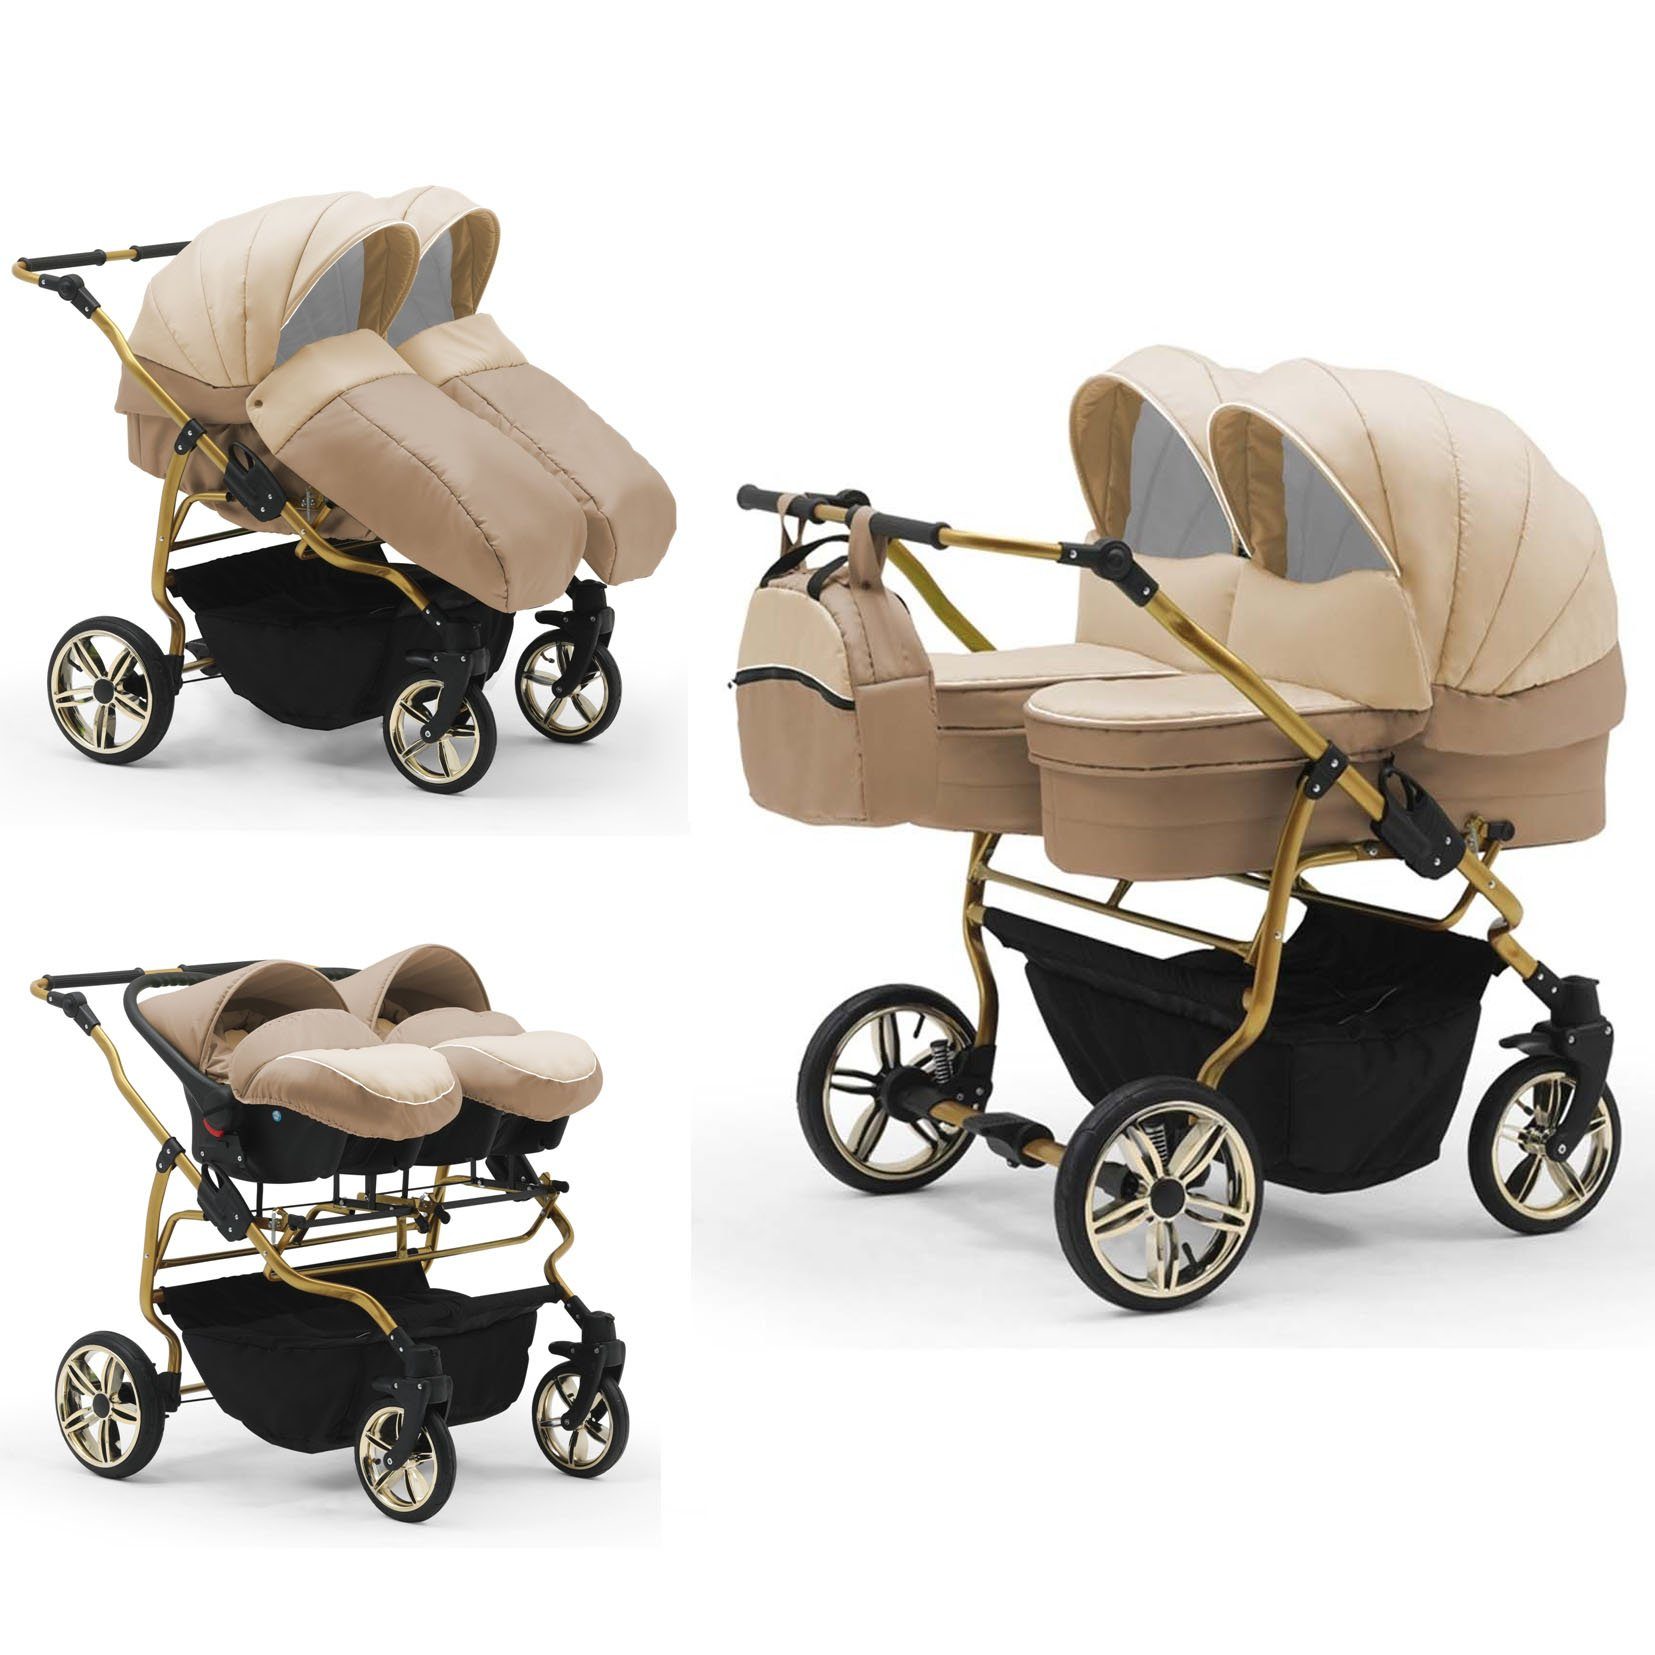 Gold Duet in - 1 Zwillingswagen inkl. Autositze Creme-Beige 3 33 babies-on-wheels 13 in Teile - Farben Lux